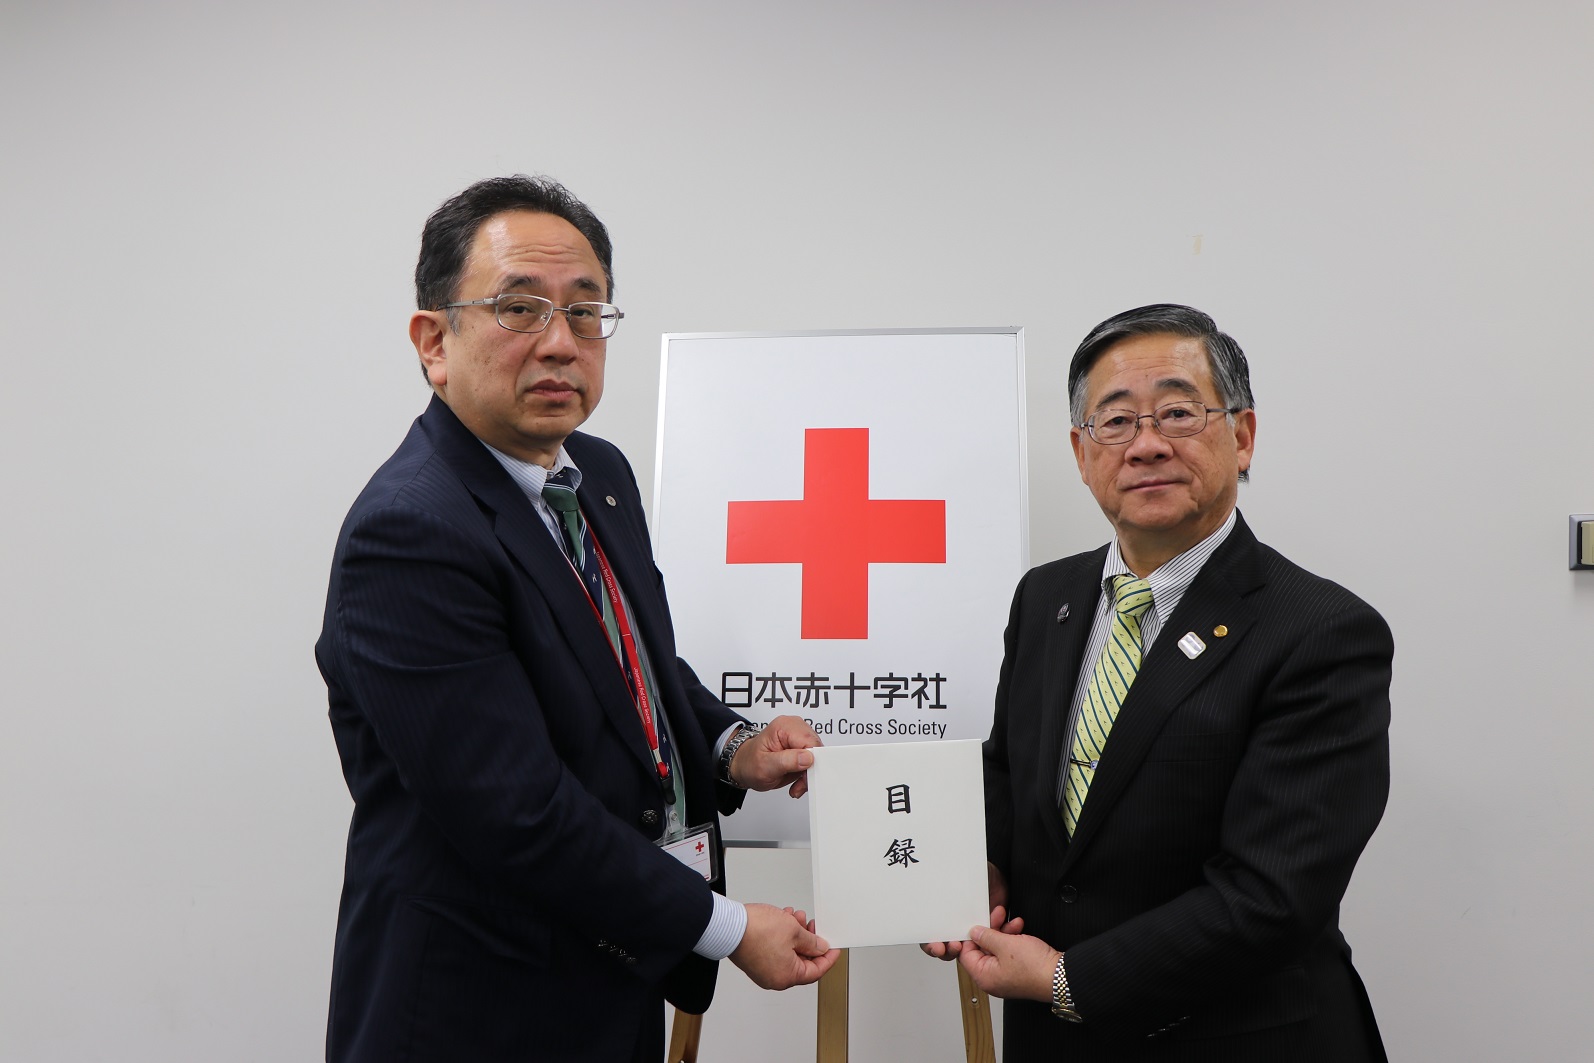 平成30年7月豪雨災害・日本赤十字社への災害義援金の寄付について
